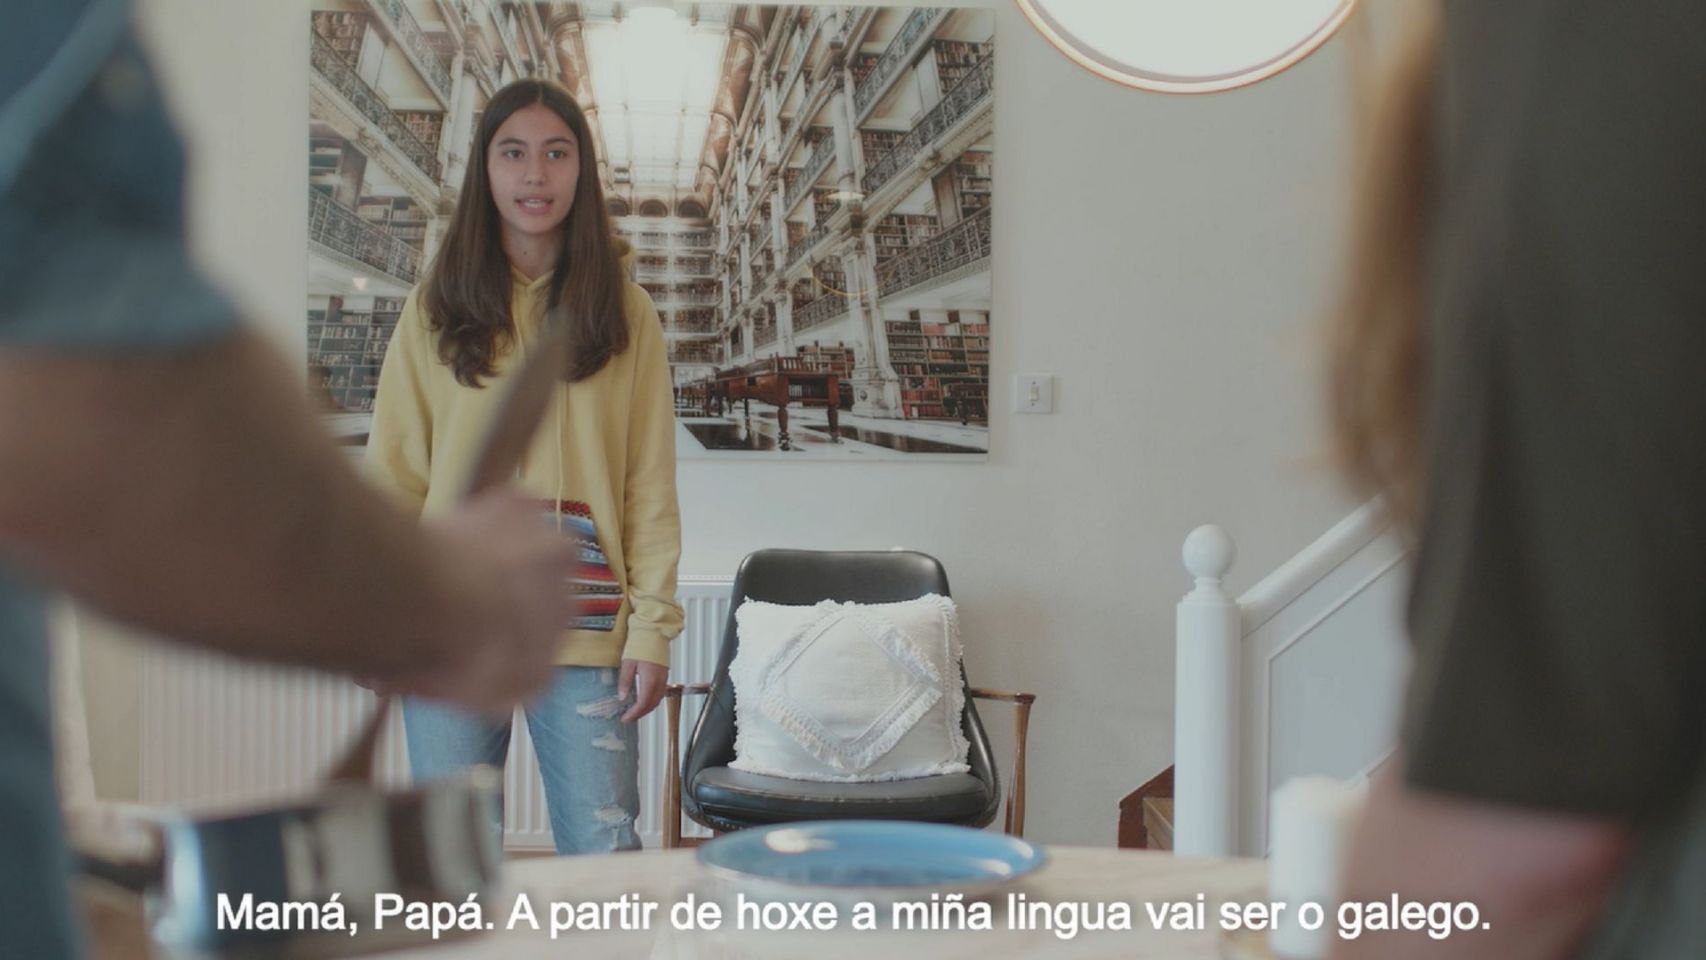 El vídeo promocional del BNG por el Día das Letras Galegas.